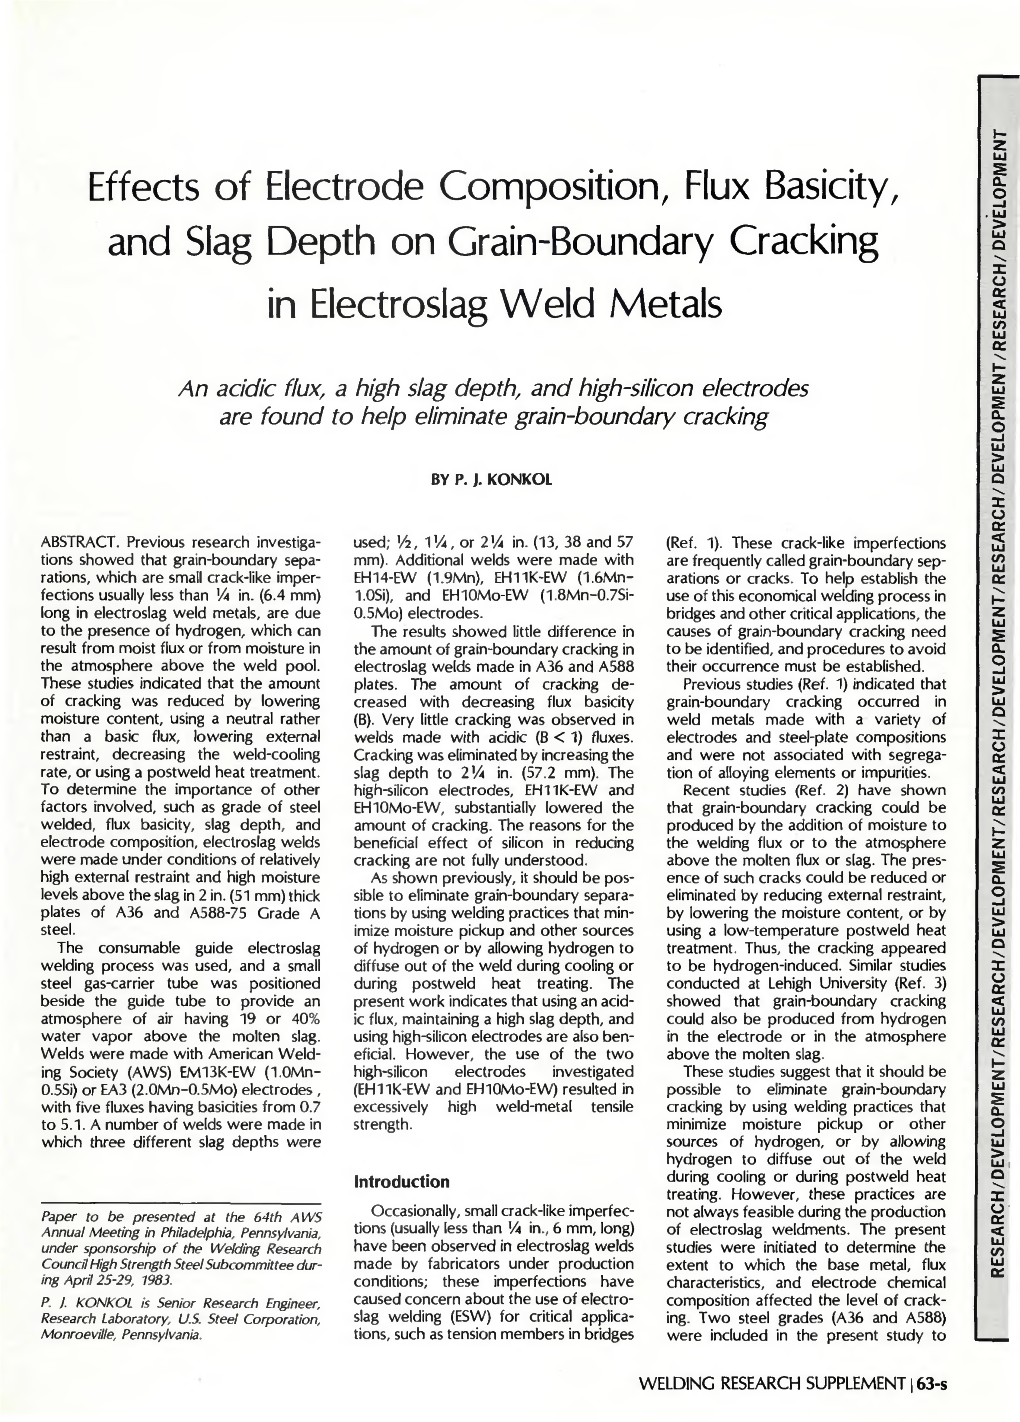 Effects of Electrode Composition, Flux Basicity, and Slag Depth on Grain-Boundary Cracking in Electroslag Weld Metals